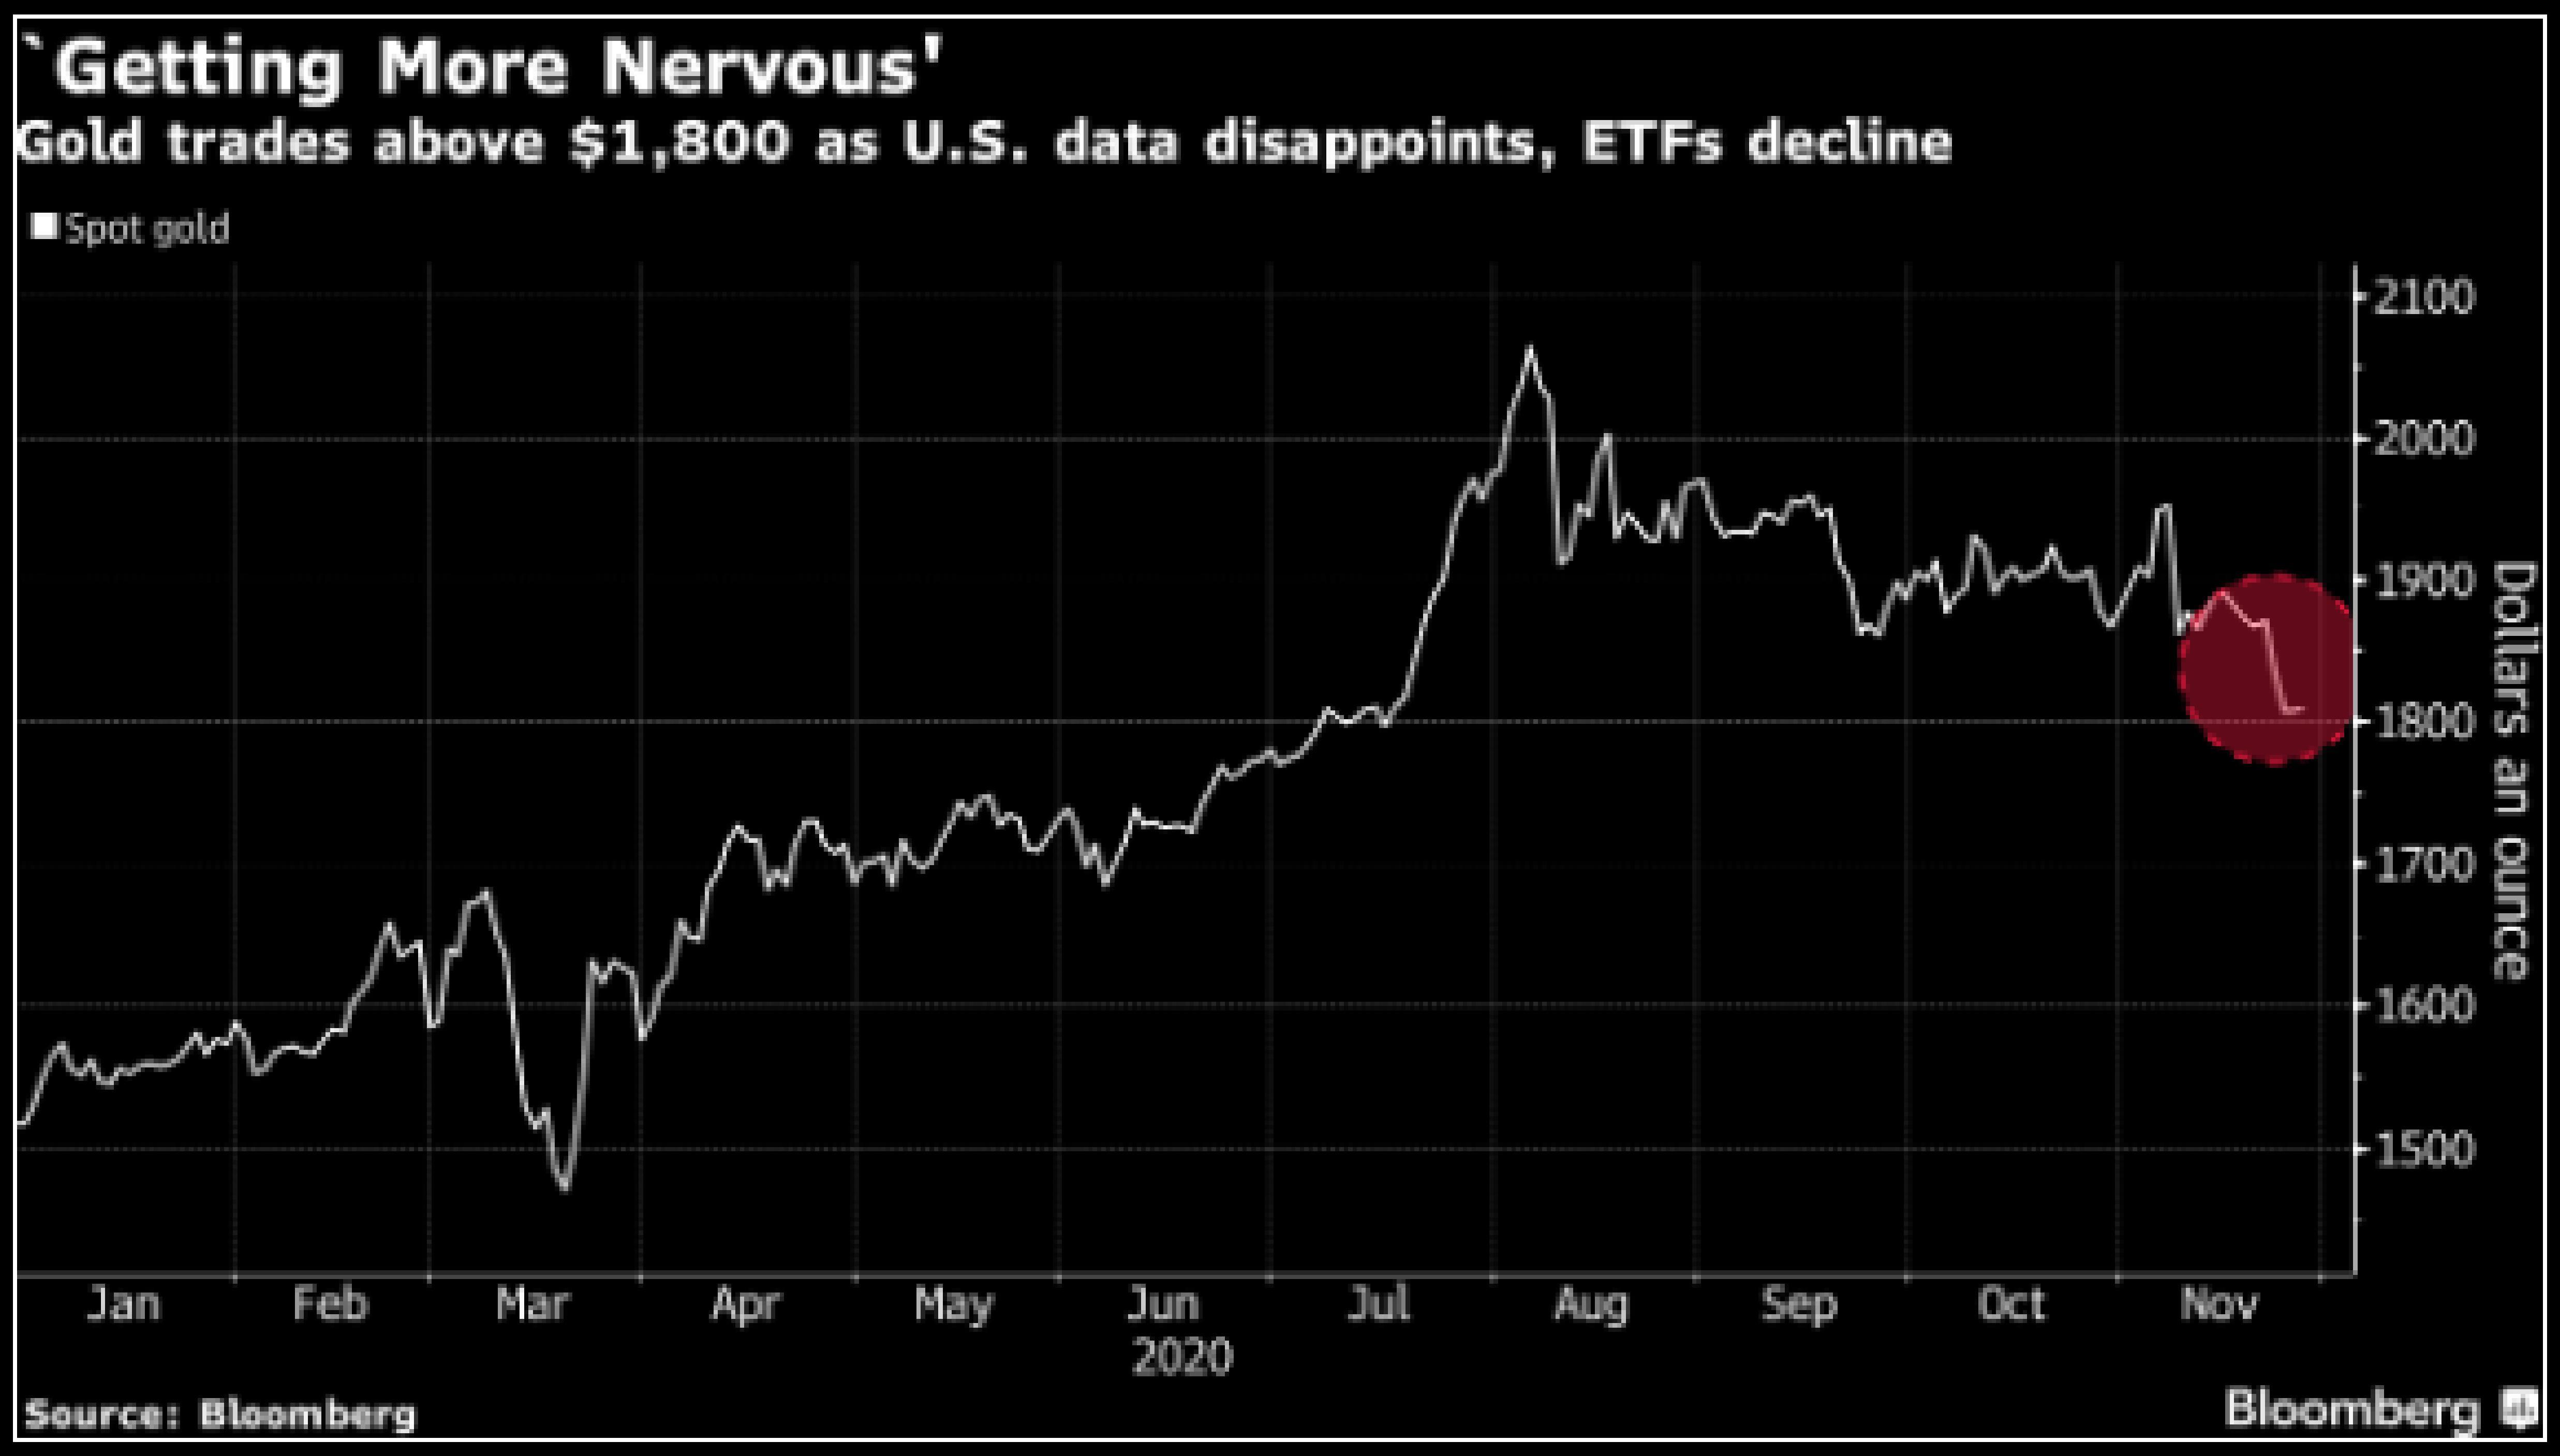 Mốc $1,800/oz tiếp tục đứng vững trước những dữ liệu gây thất vọng của Hoa Kỳ, trong bối cảnh các quỹ ETF liên tục giảm nắm giữ